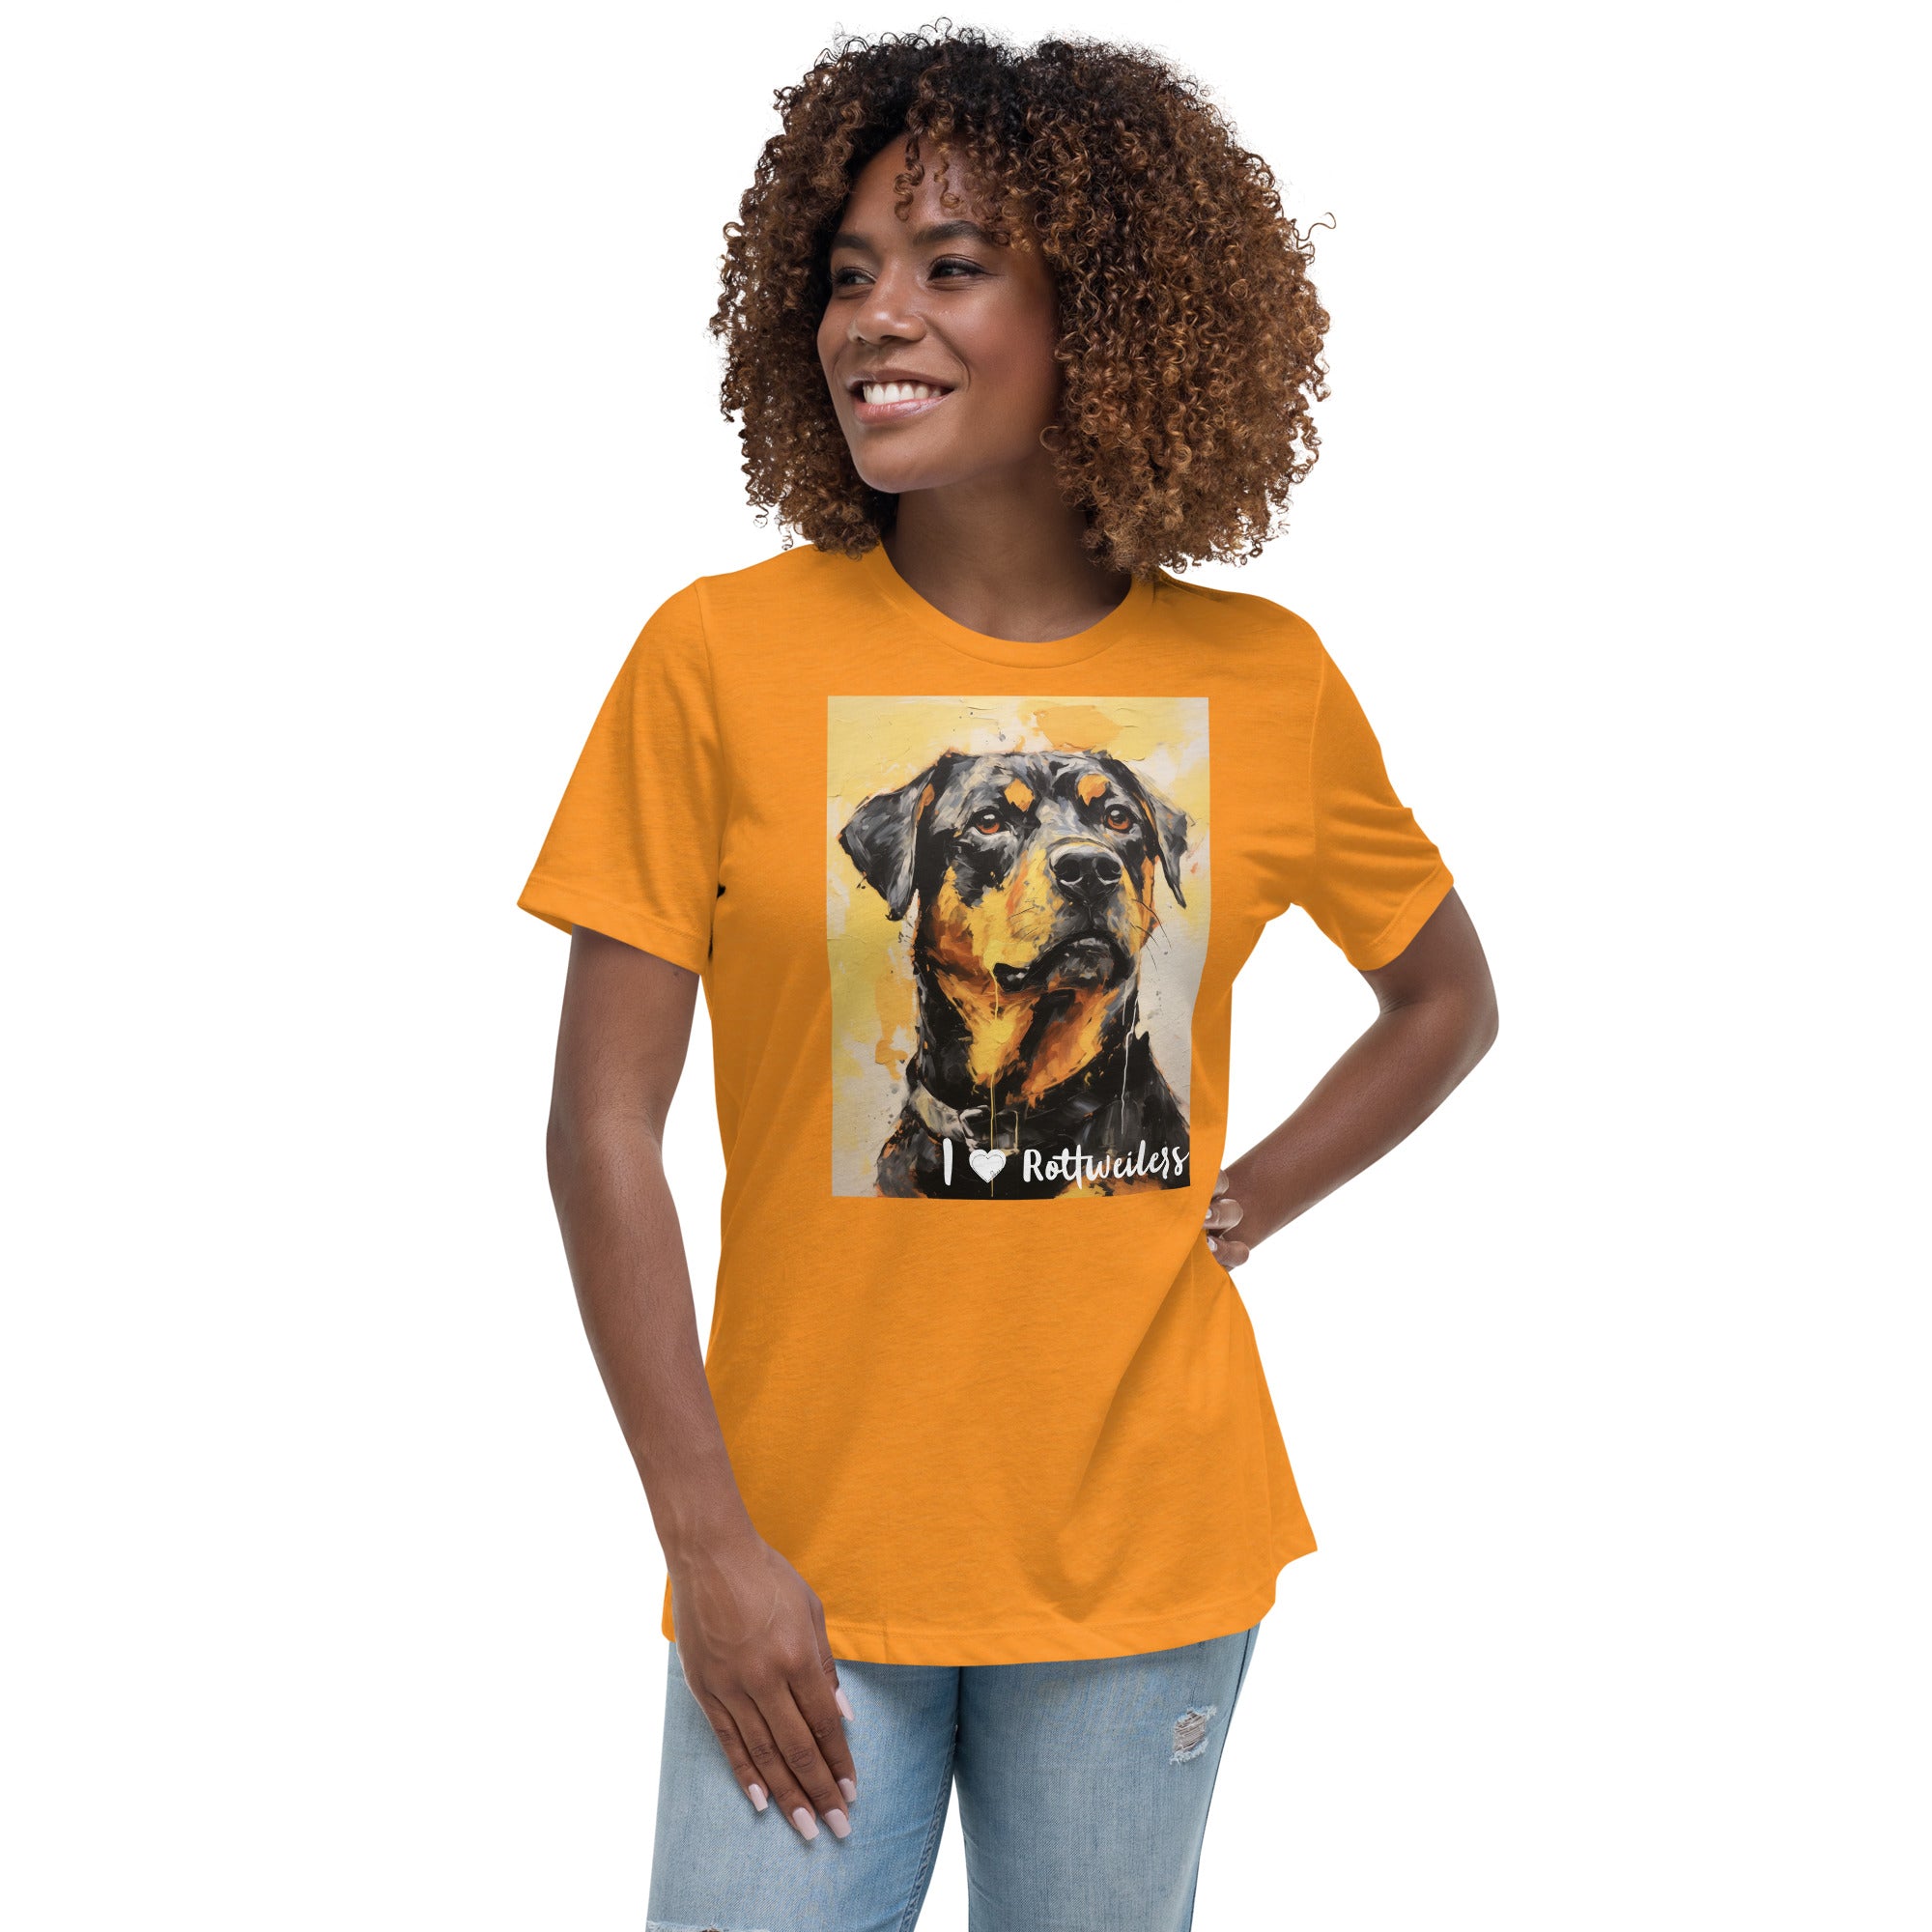 Women's Relaxed T-Shirt - I ❤ Dogs - Rottweiler